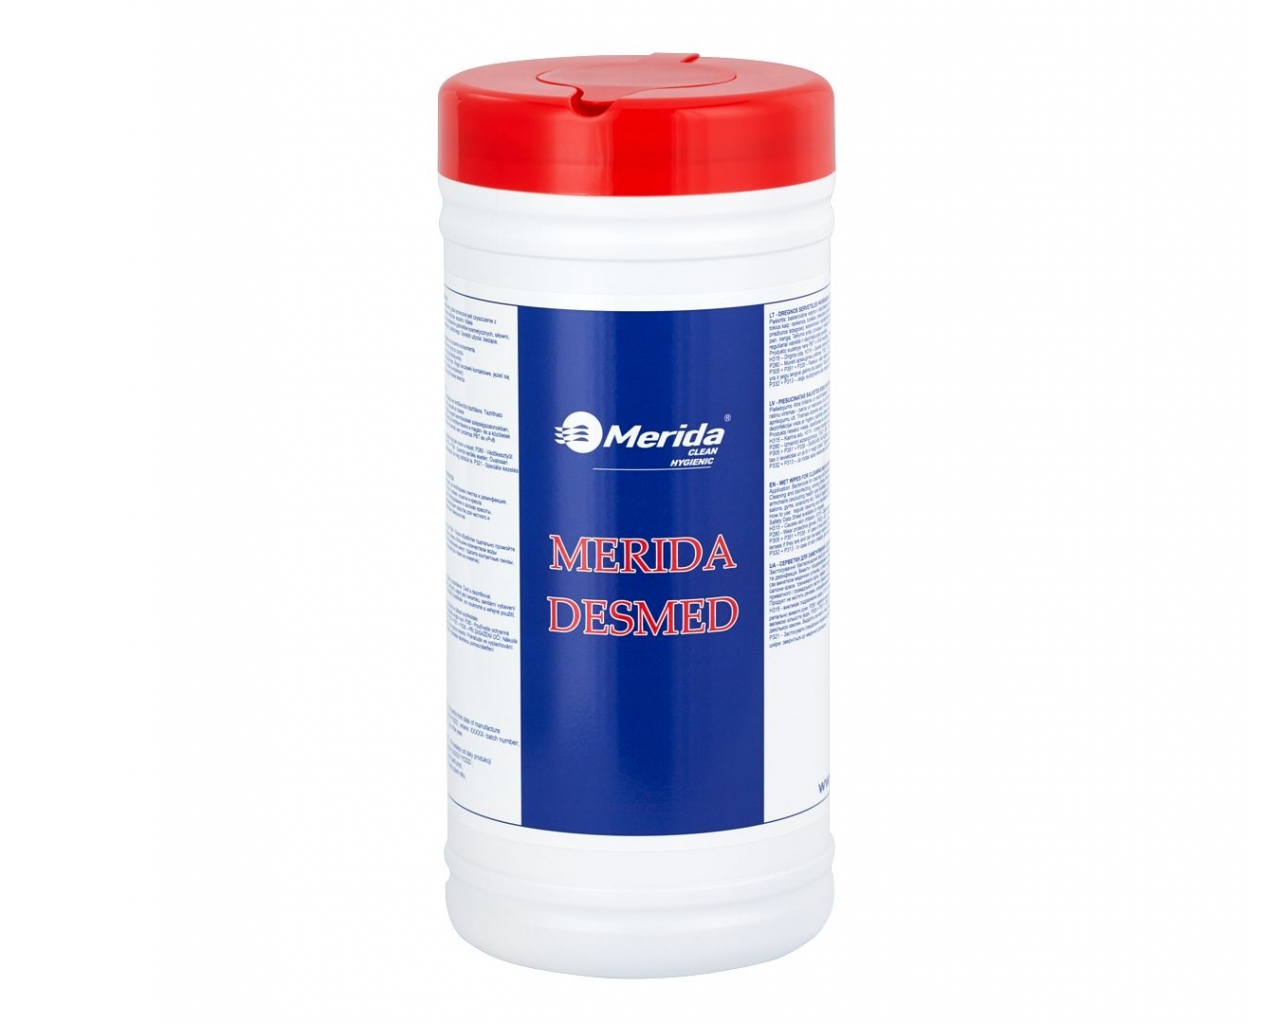 Nasączone ściereczki do czyszczenia i dezynfekcji powierzchni MERIDA DESMED, pojemnik 200 sztuk